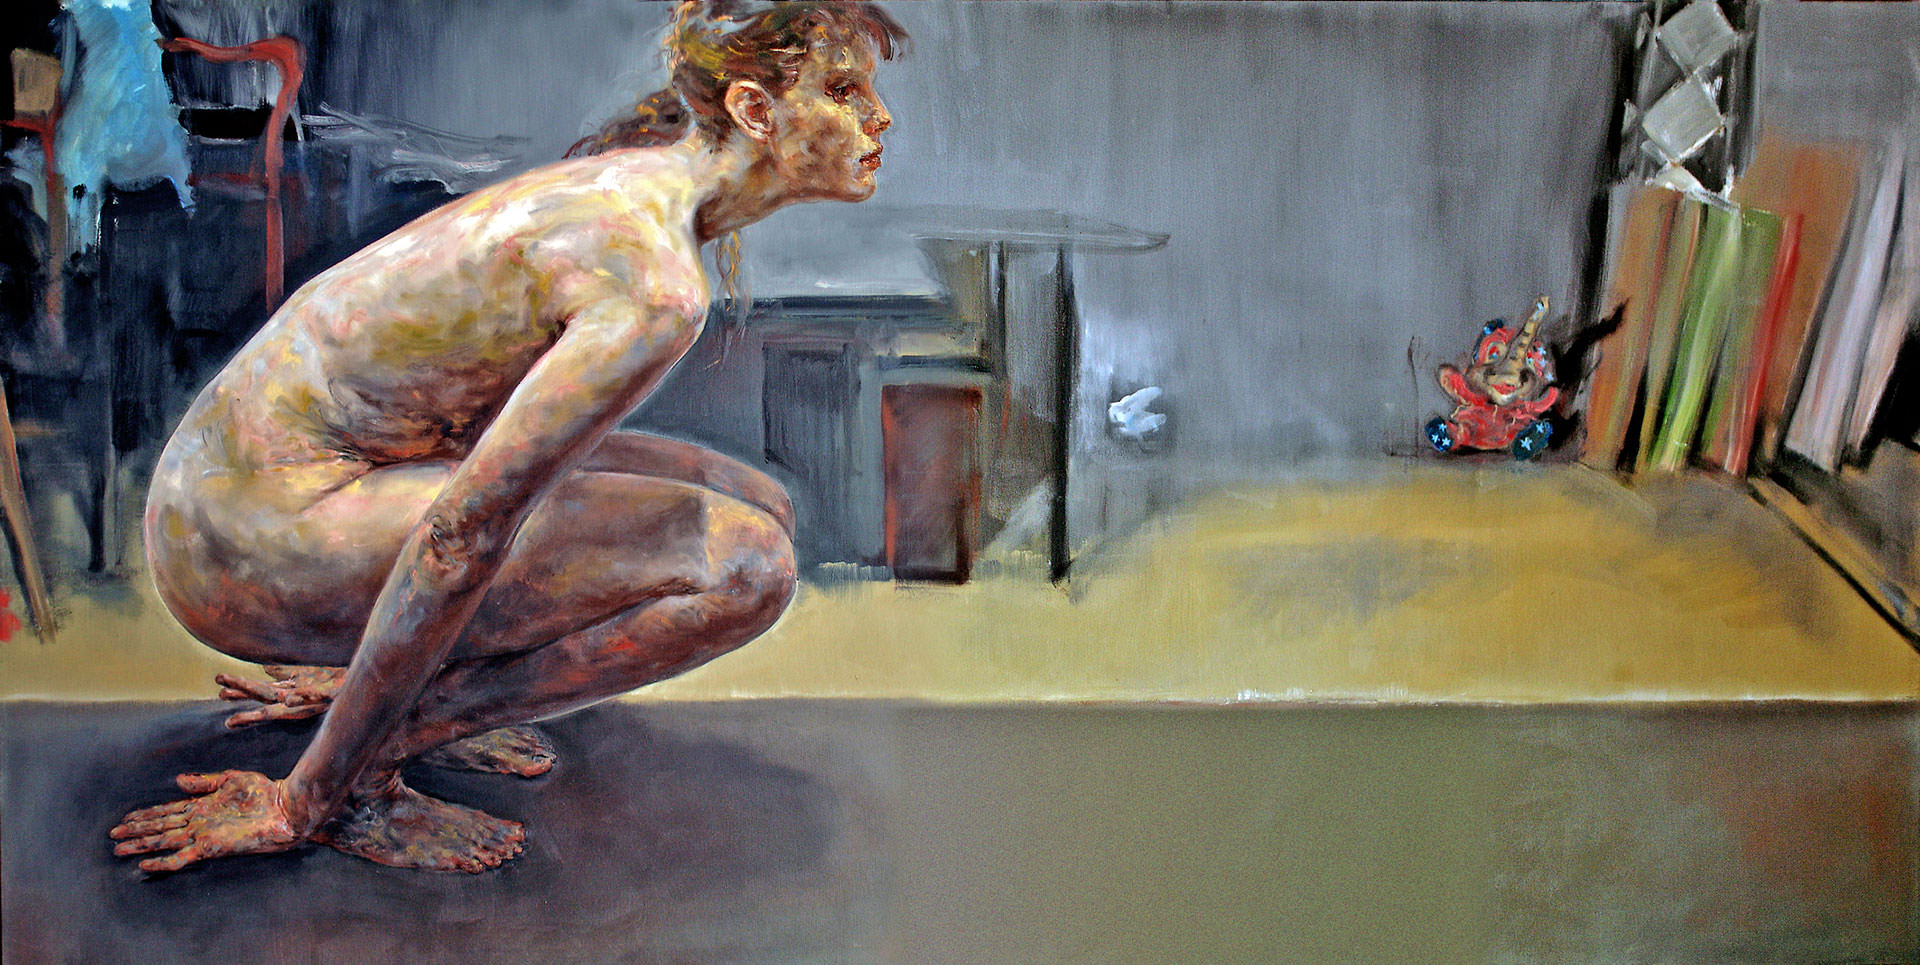 Springerin 2004 155 x 310 cm peinture à l’huile sur toile par Günther Roeder